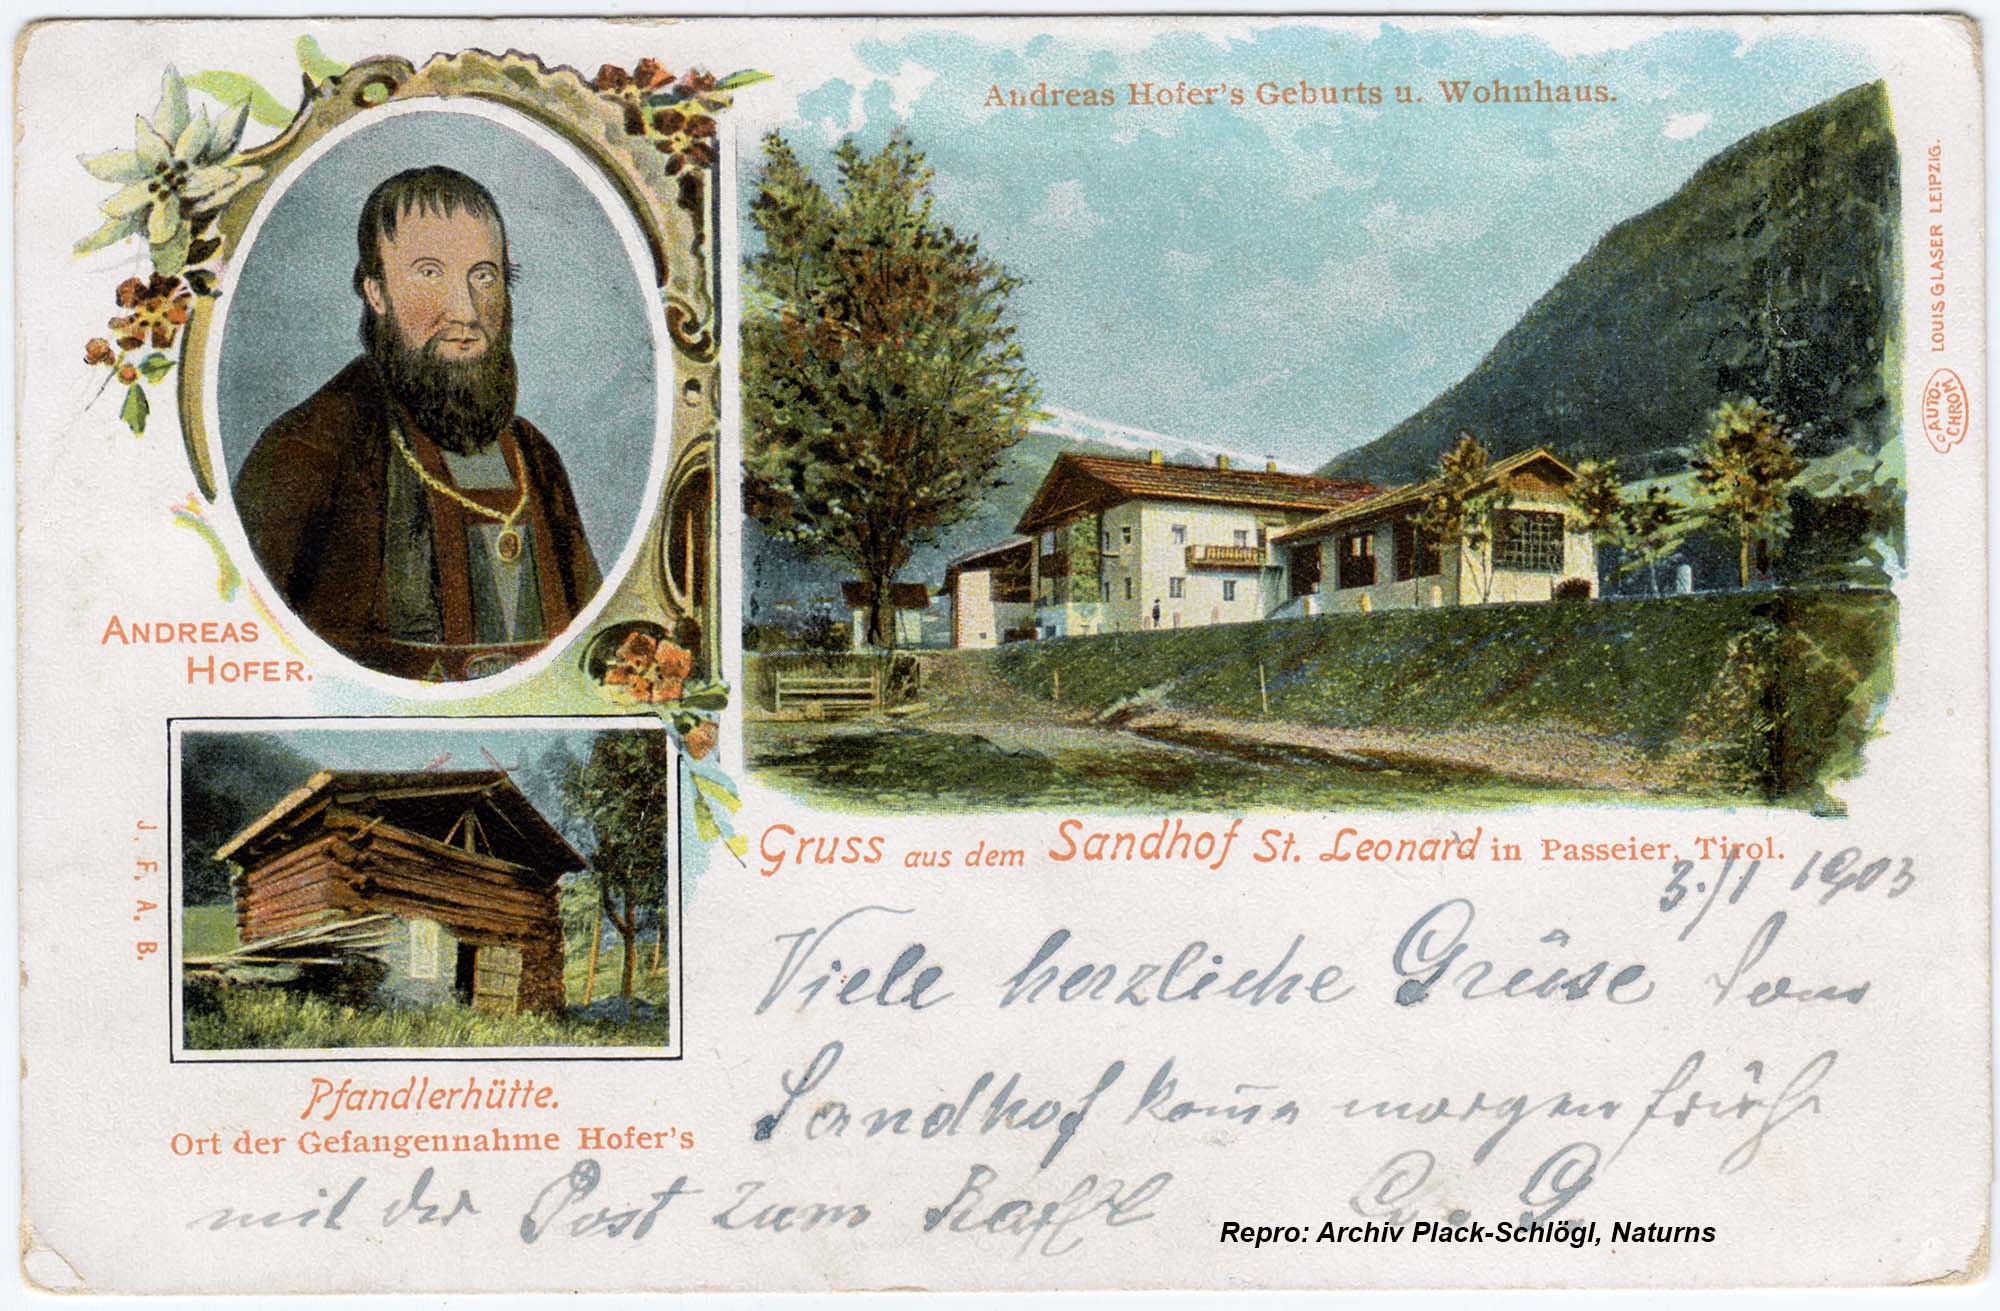 Gruss aus dem Sandhof, St. Leonhard in Passeier, Tirol